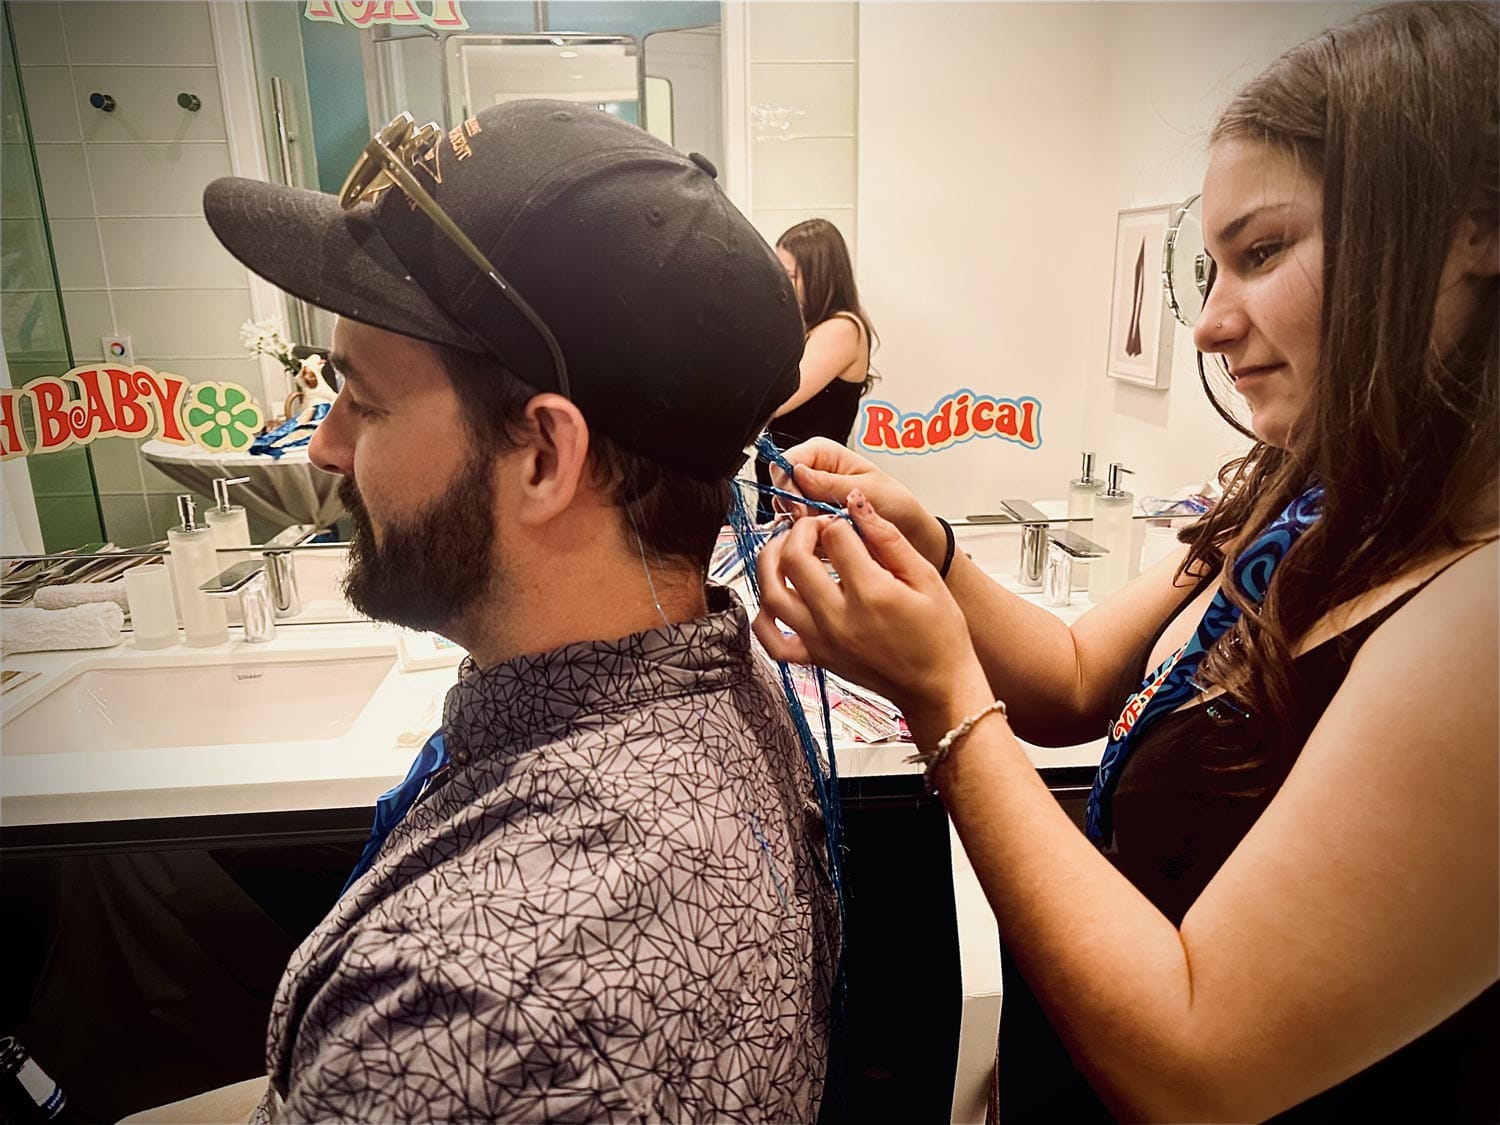 Woman trimming a man's hair in a salon.